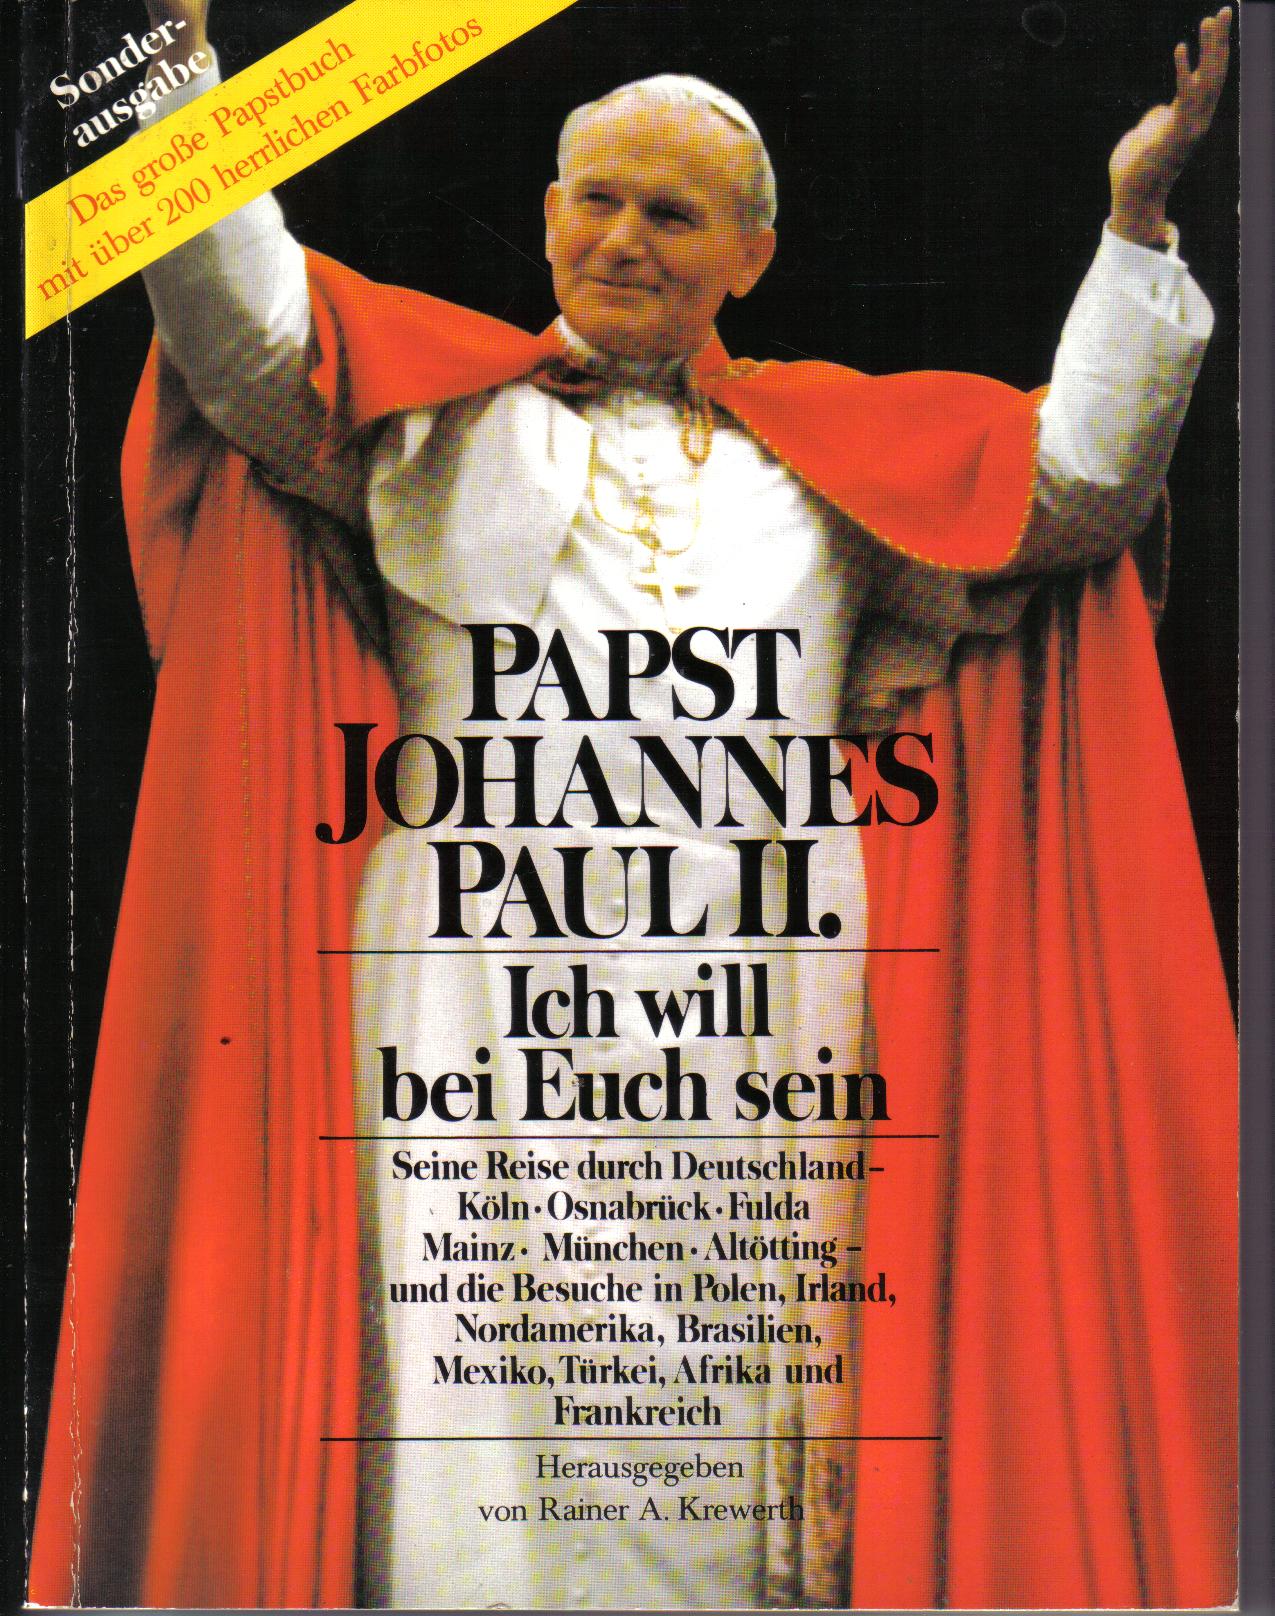 Papst Johannes Paul II. Sonderausgabe  Hrsg. Rainer A. Kreuwerth